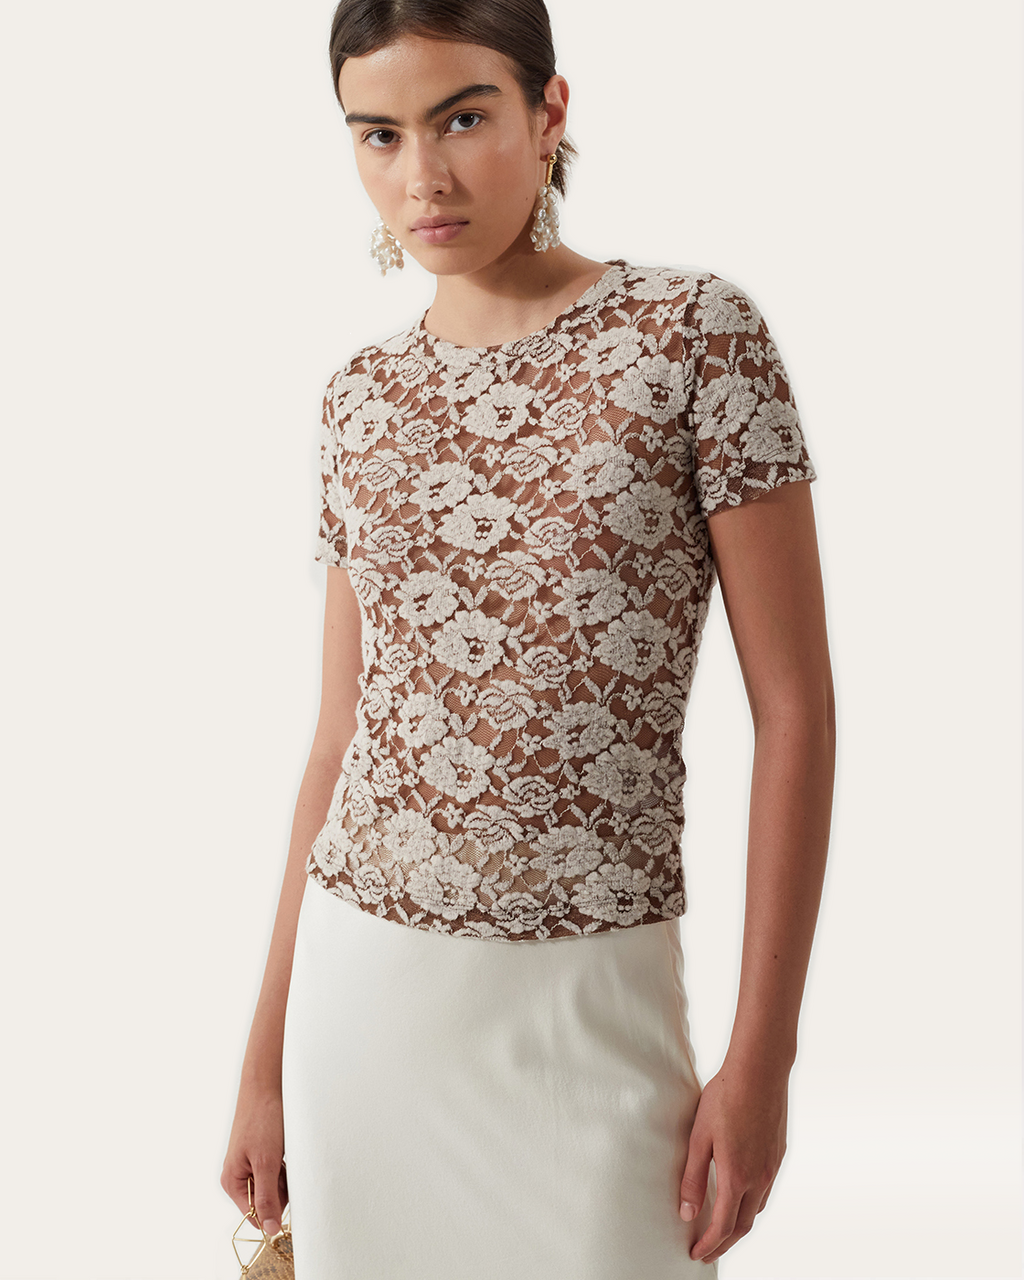 Adina T-Shirt Cotton Blend Floral Lace Brown